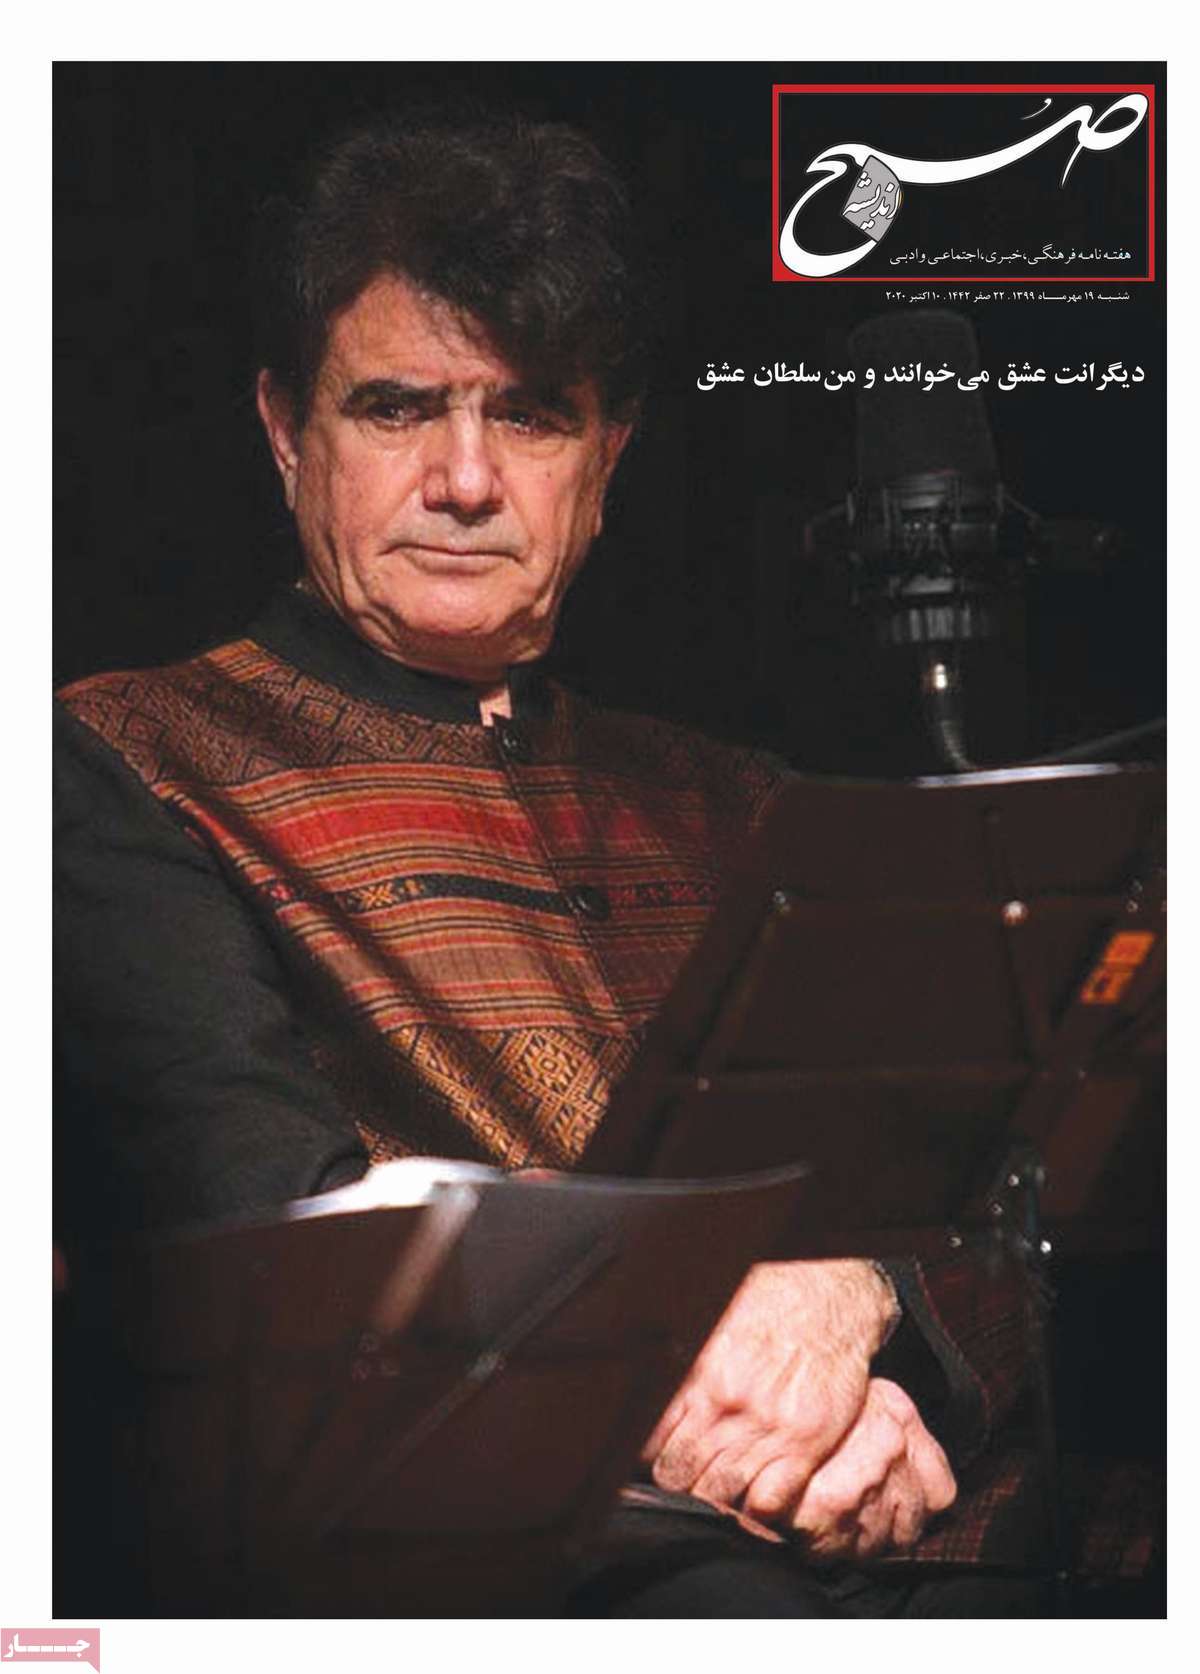 صفحه نخست مجله صبح اندیشه - شنبه, ۱۹ مهر ۱۳۹۹